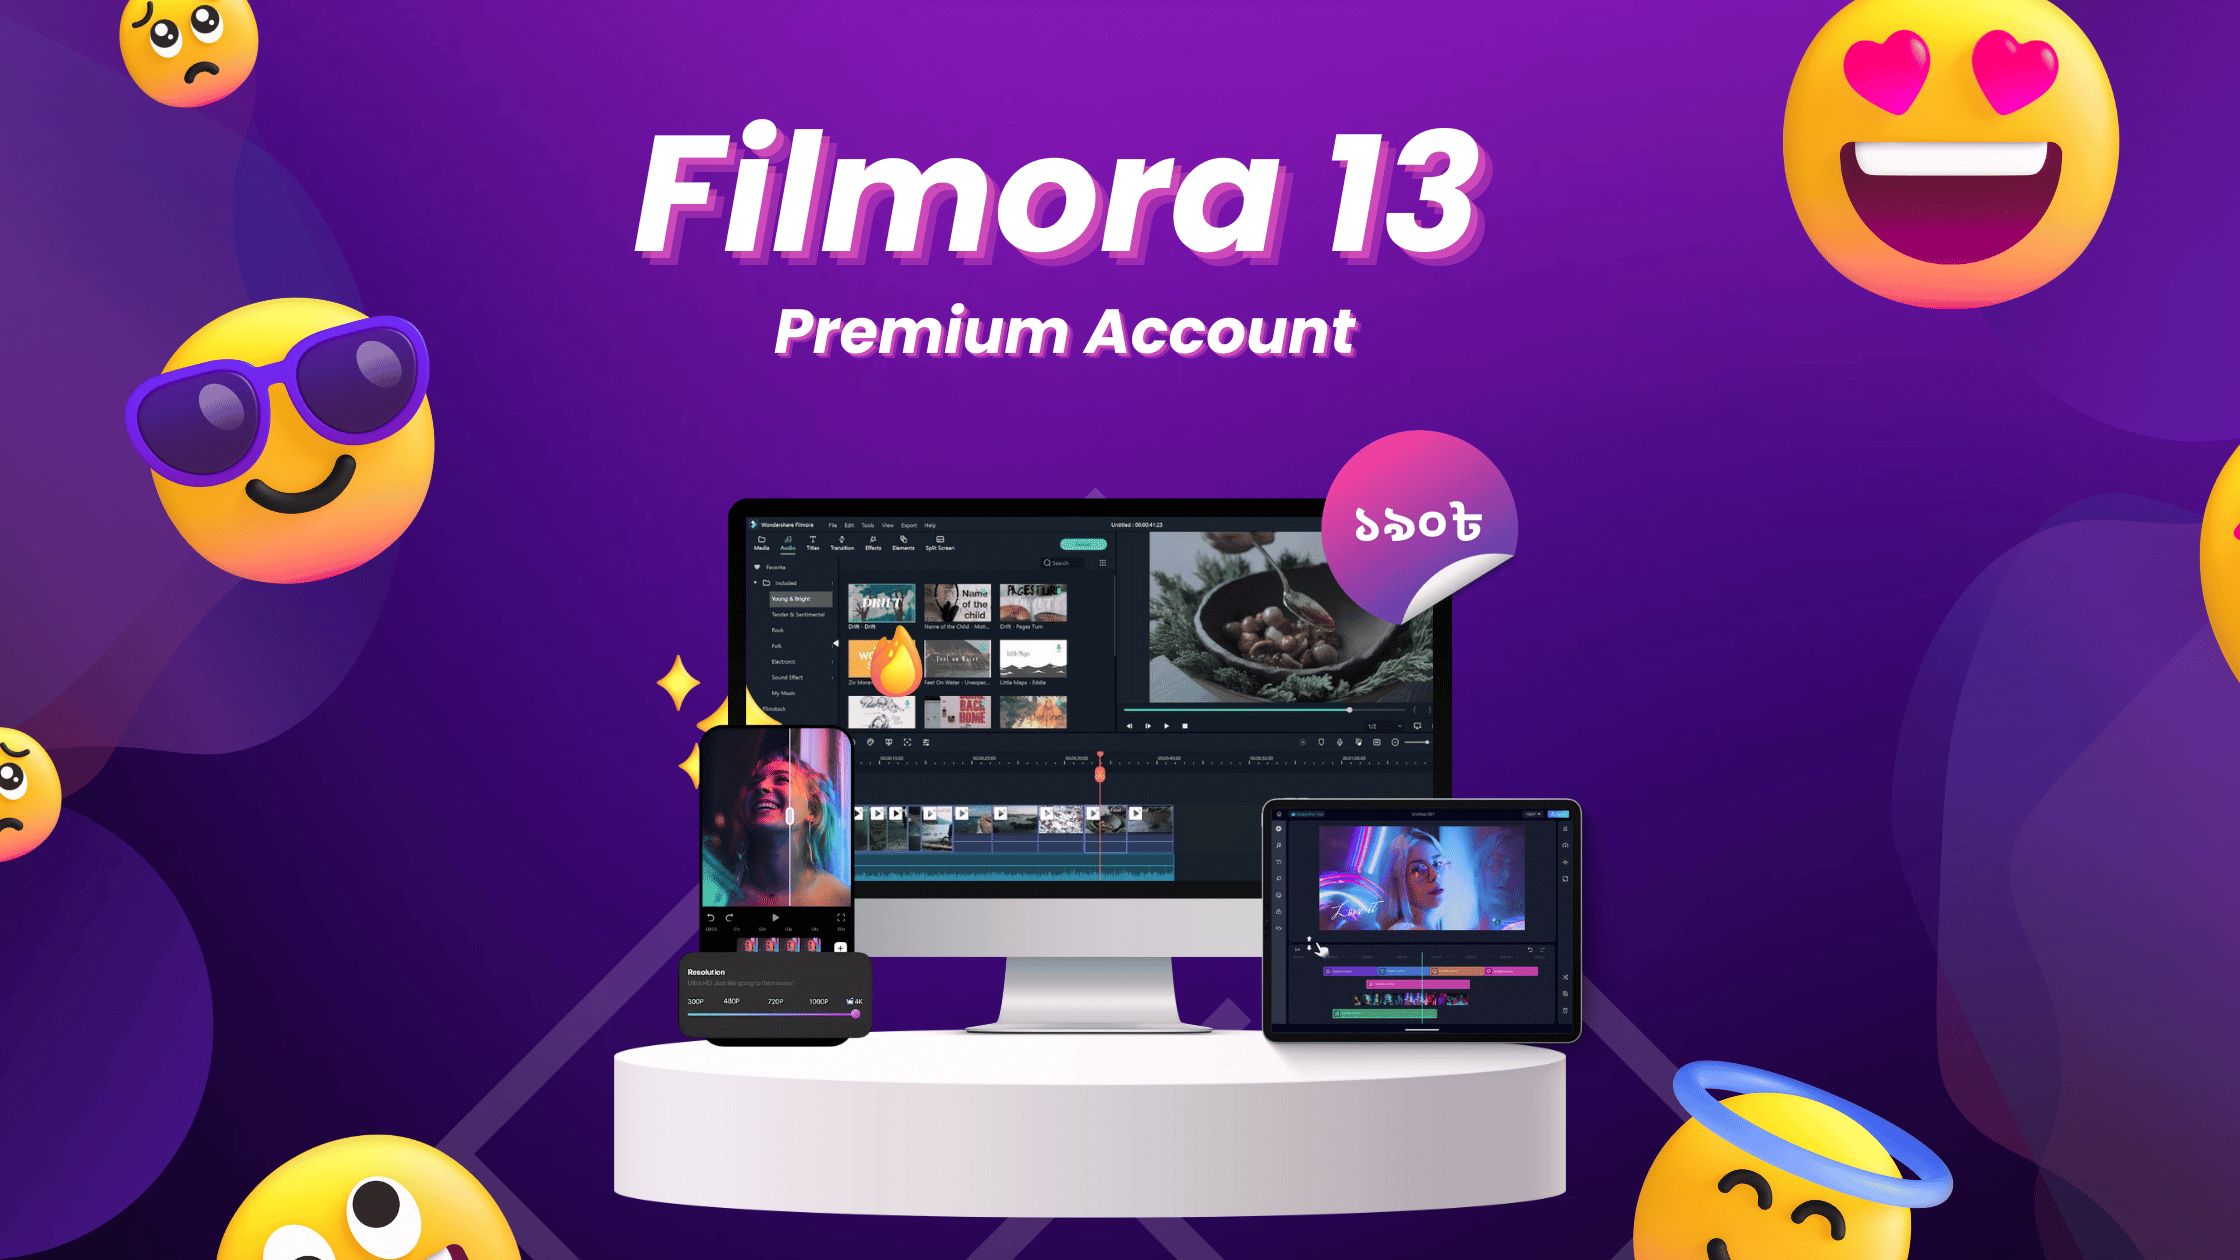 Filmora 13 Premium Account